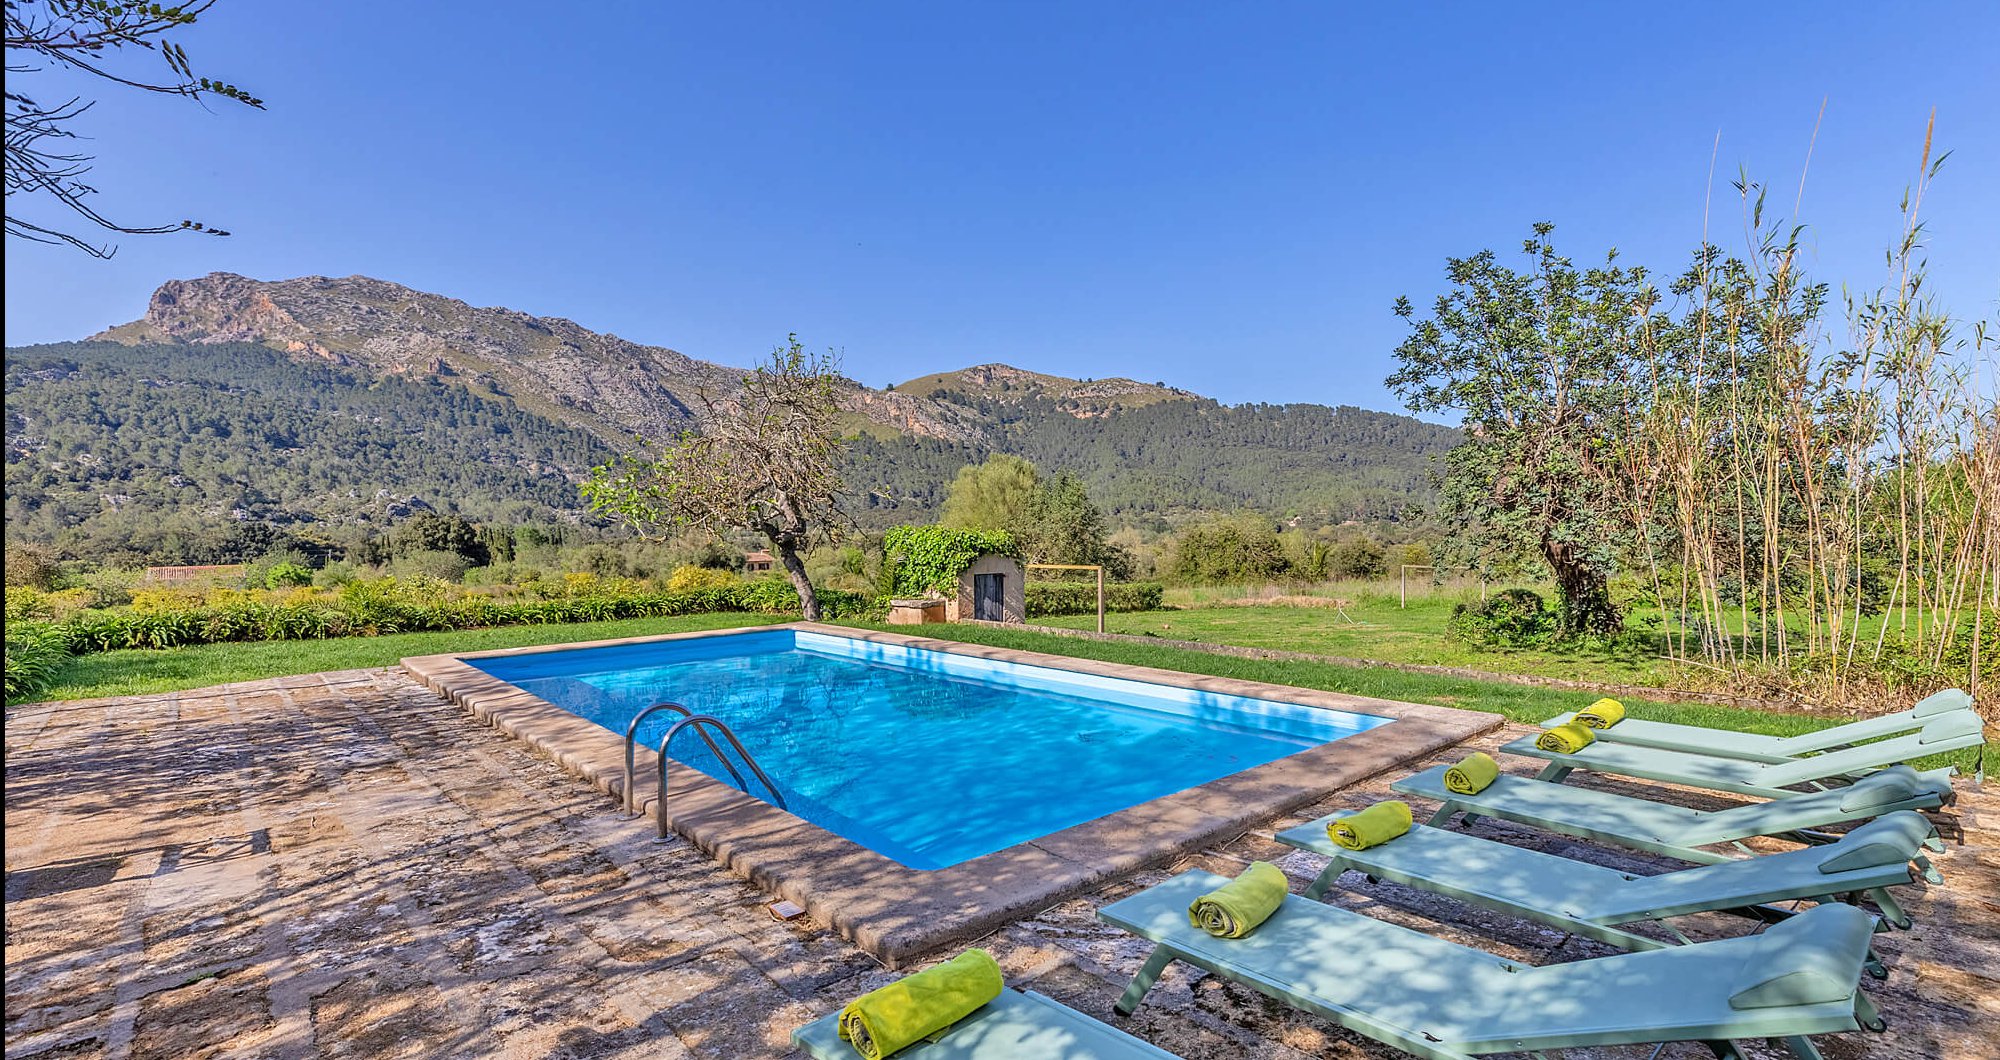 Ferienhaus Mallorca mit Pool für 8 Personen in ländlicher Umgebung